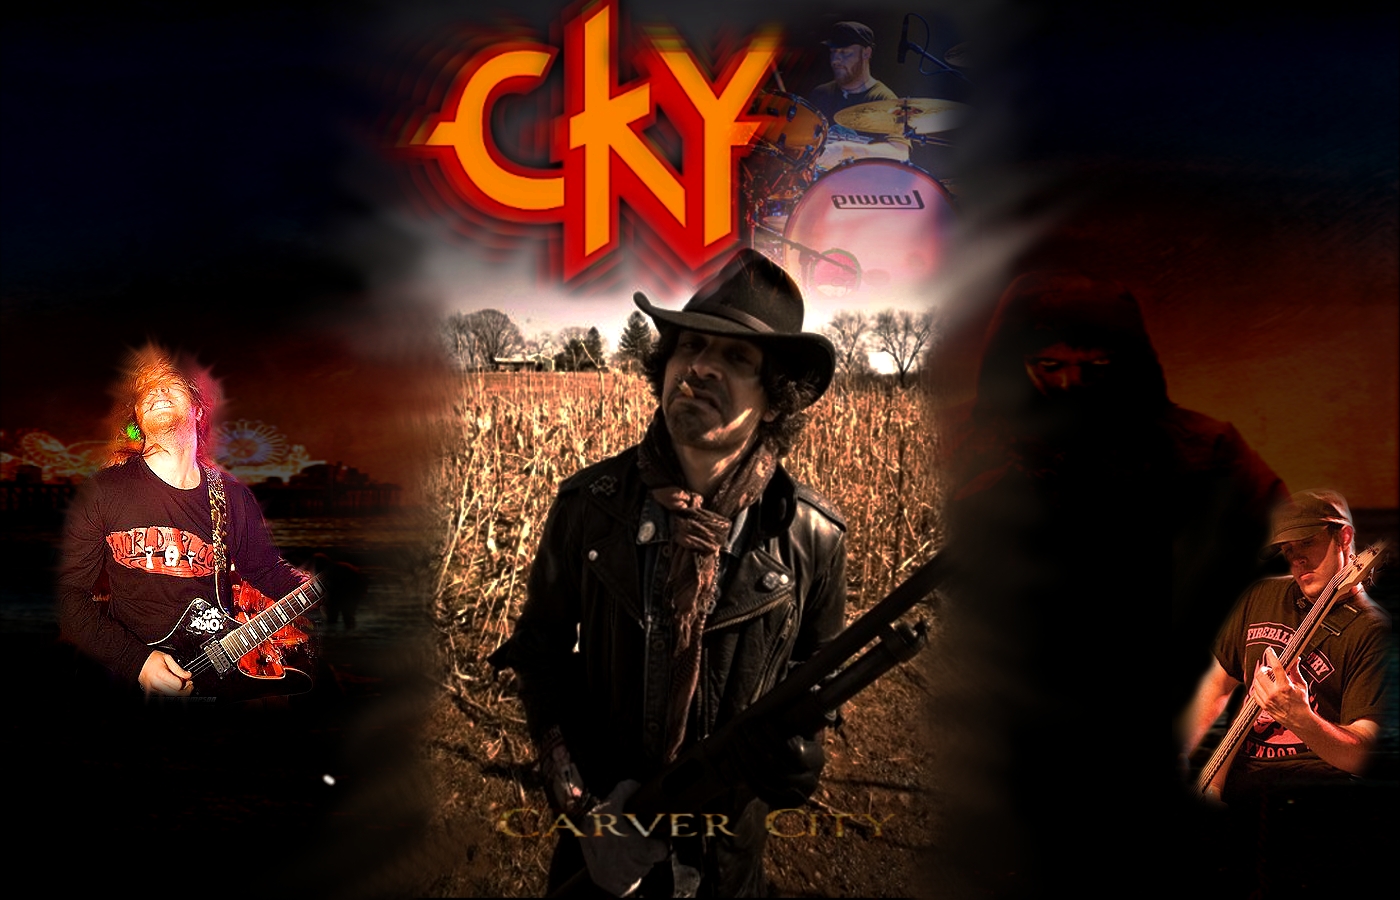 CKY Carver City by TheNarutoGeek on deviantART 1400x900